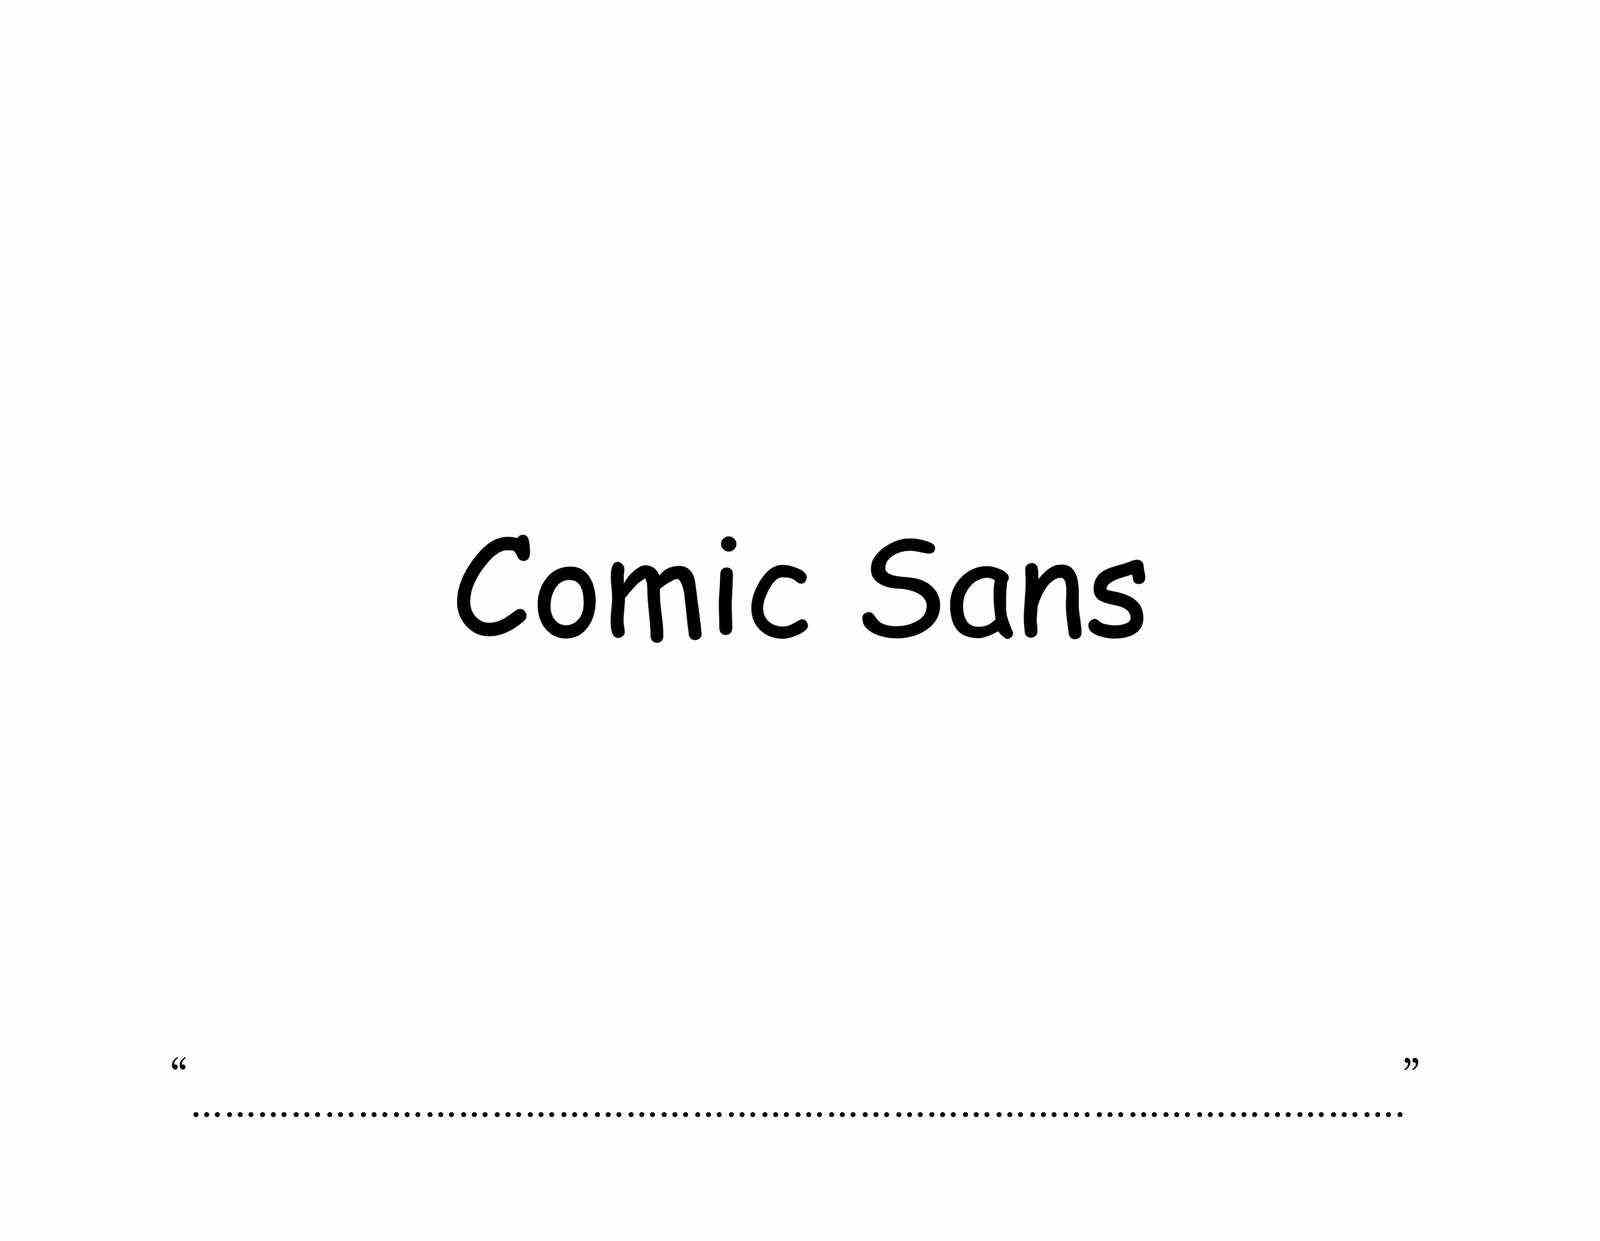 Comic Sans in Comic Sans Schriftart geschrieben.